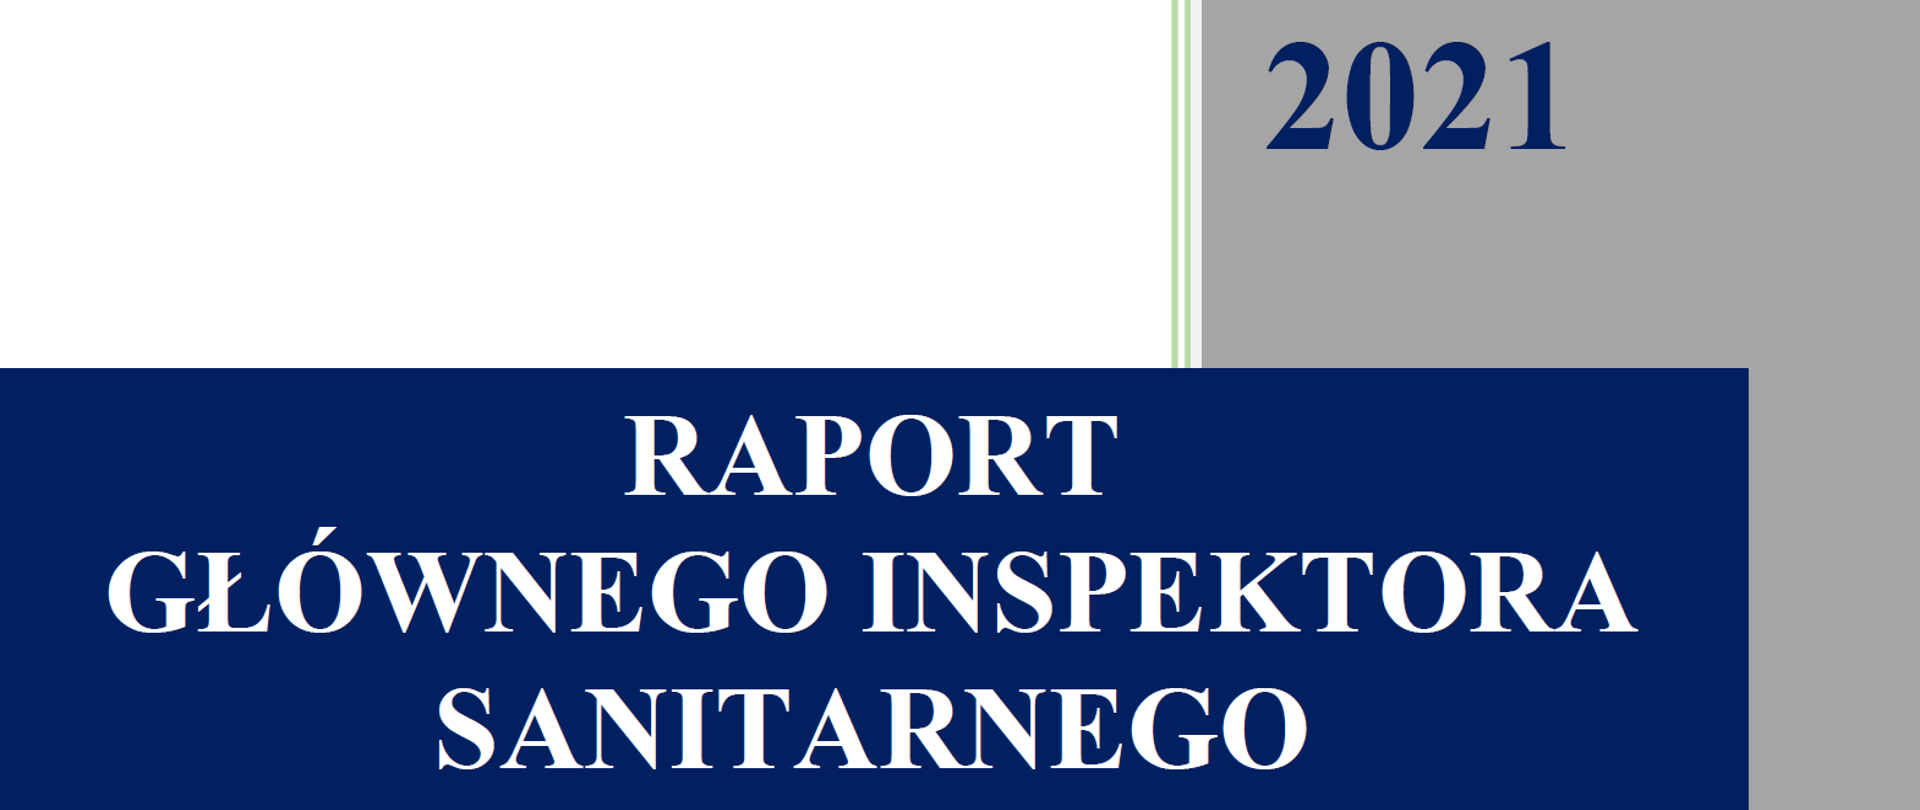 Raport Głównego Inspektora Sanitarnego 2021